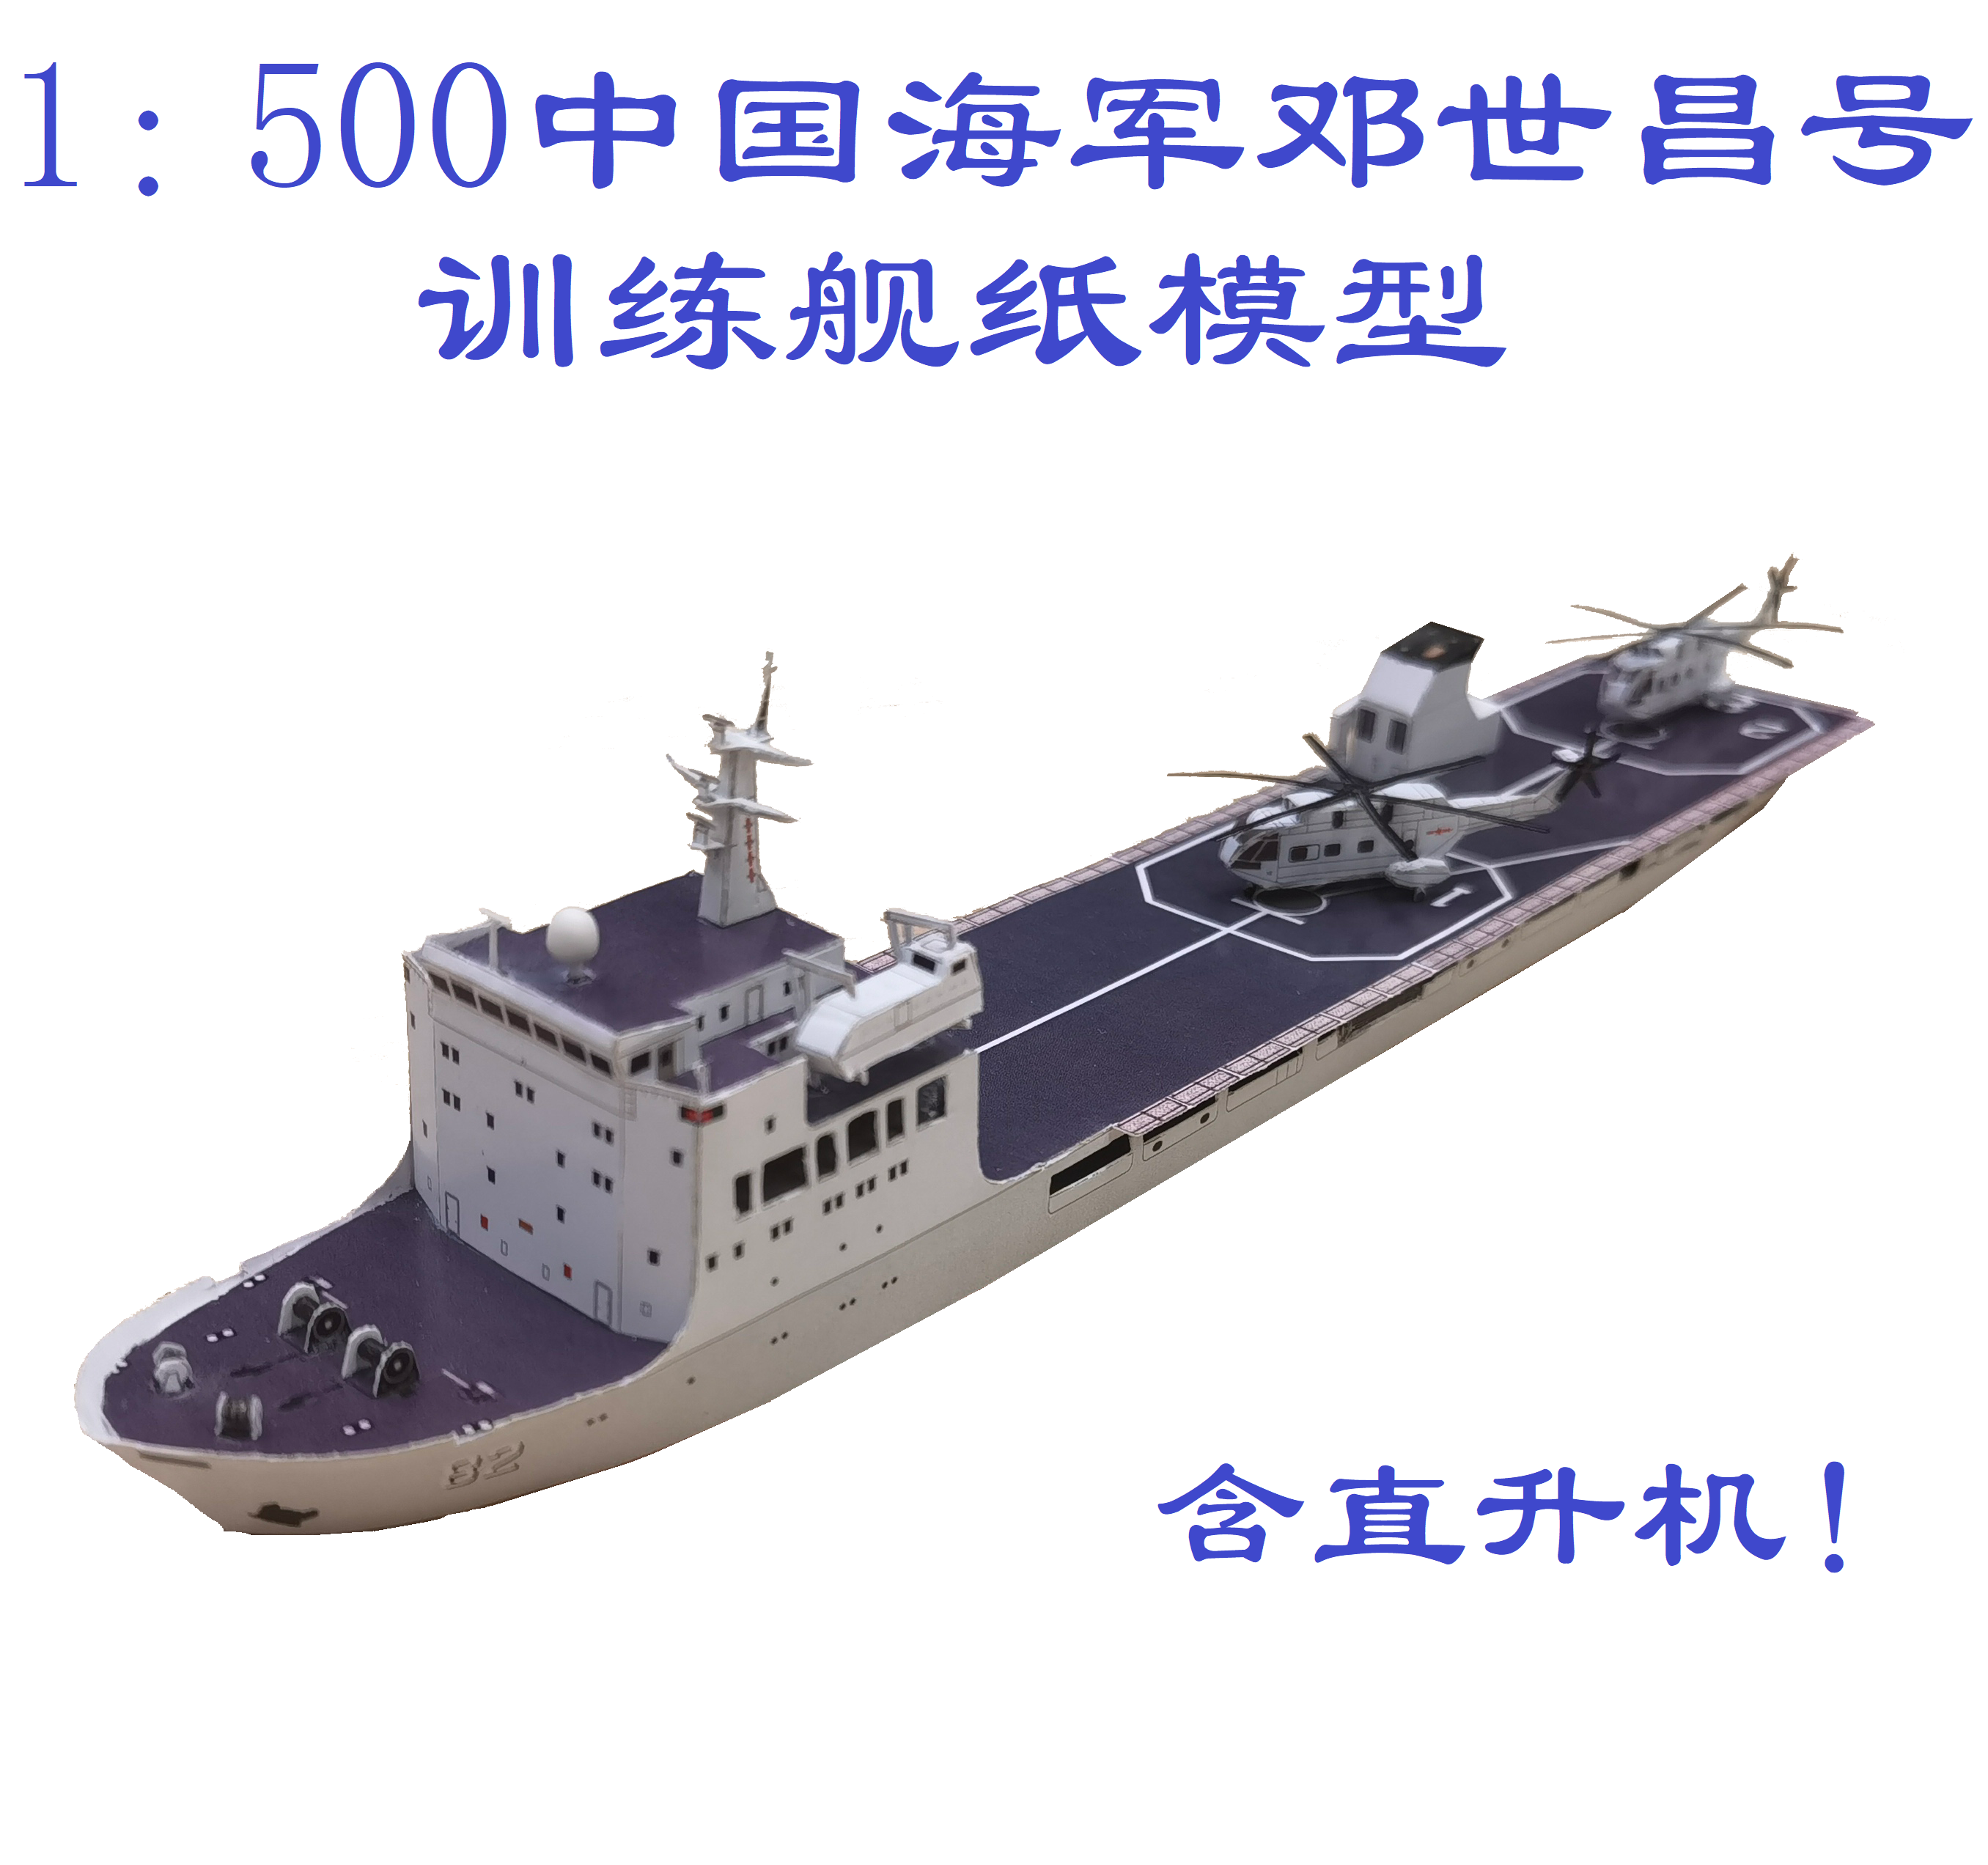 匹格工厂中国海军82世昌号训练舰模型3D纸模DIY海军训练舰模型